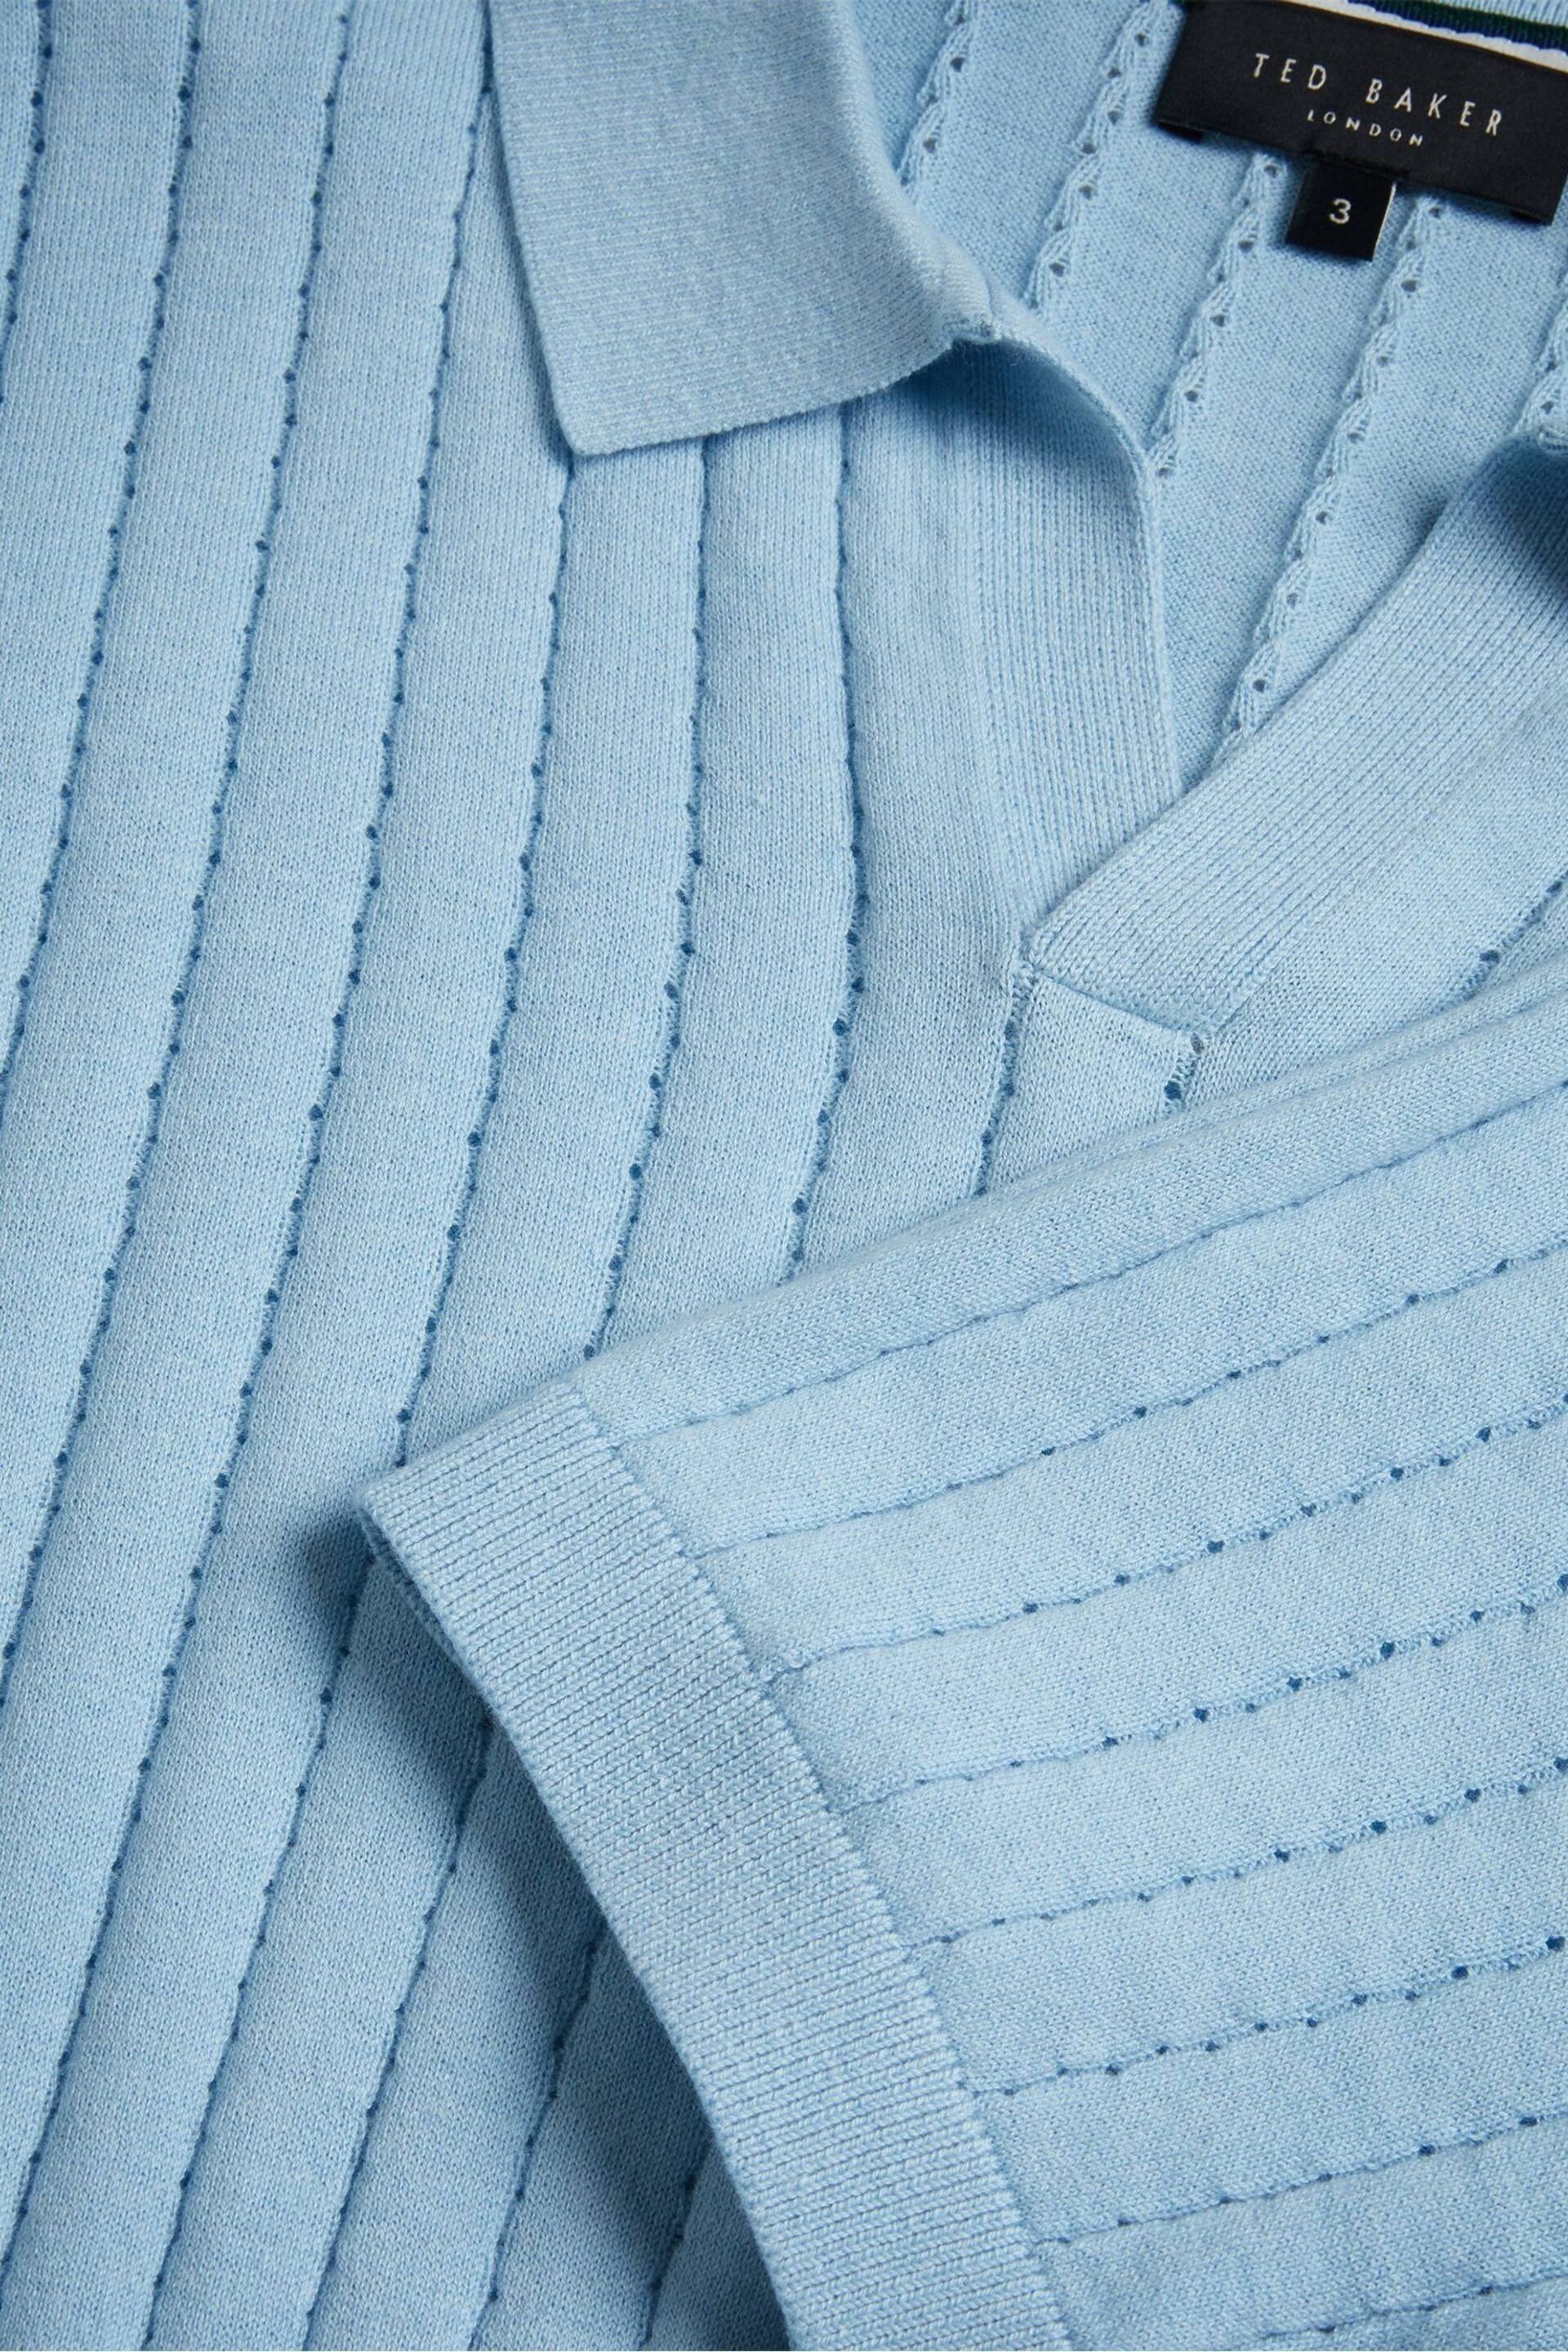 Ted Baker Light Blue Botany Regular Open Collar Polo Shirt - Image 5 of 6